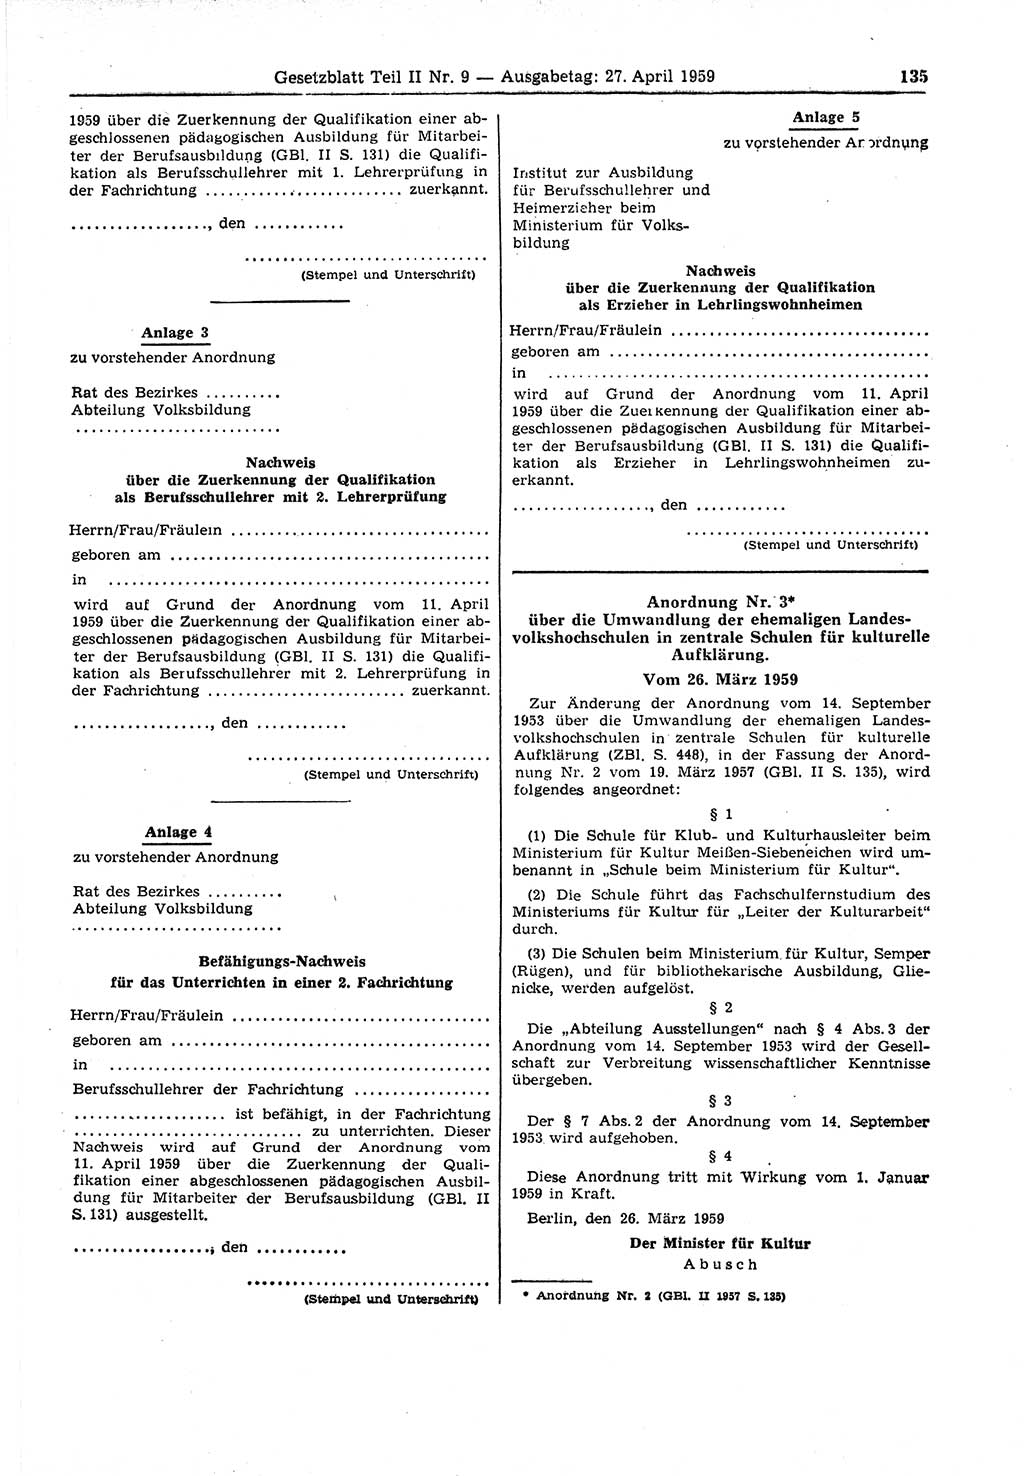 Gesetzblatt (GBl.) der Deutschen Demokratischen Republik (DDR) Teil ⅠⅠ 1959, Seite 135 (GBl. DDR ⅠⅠ 1959, S. 135)